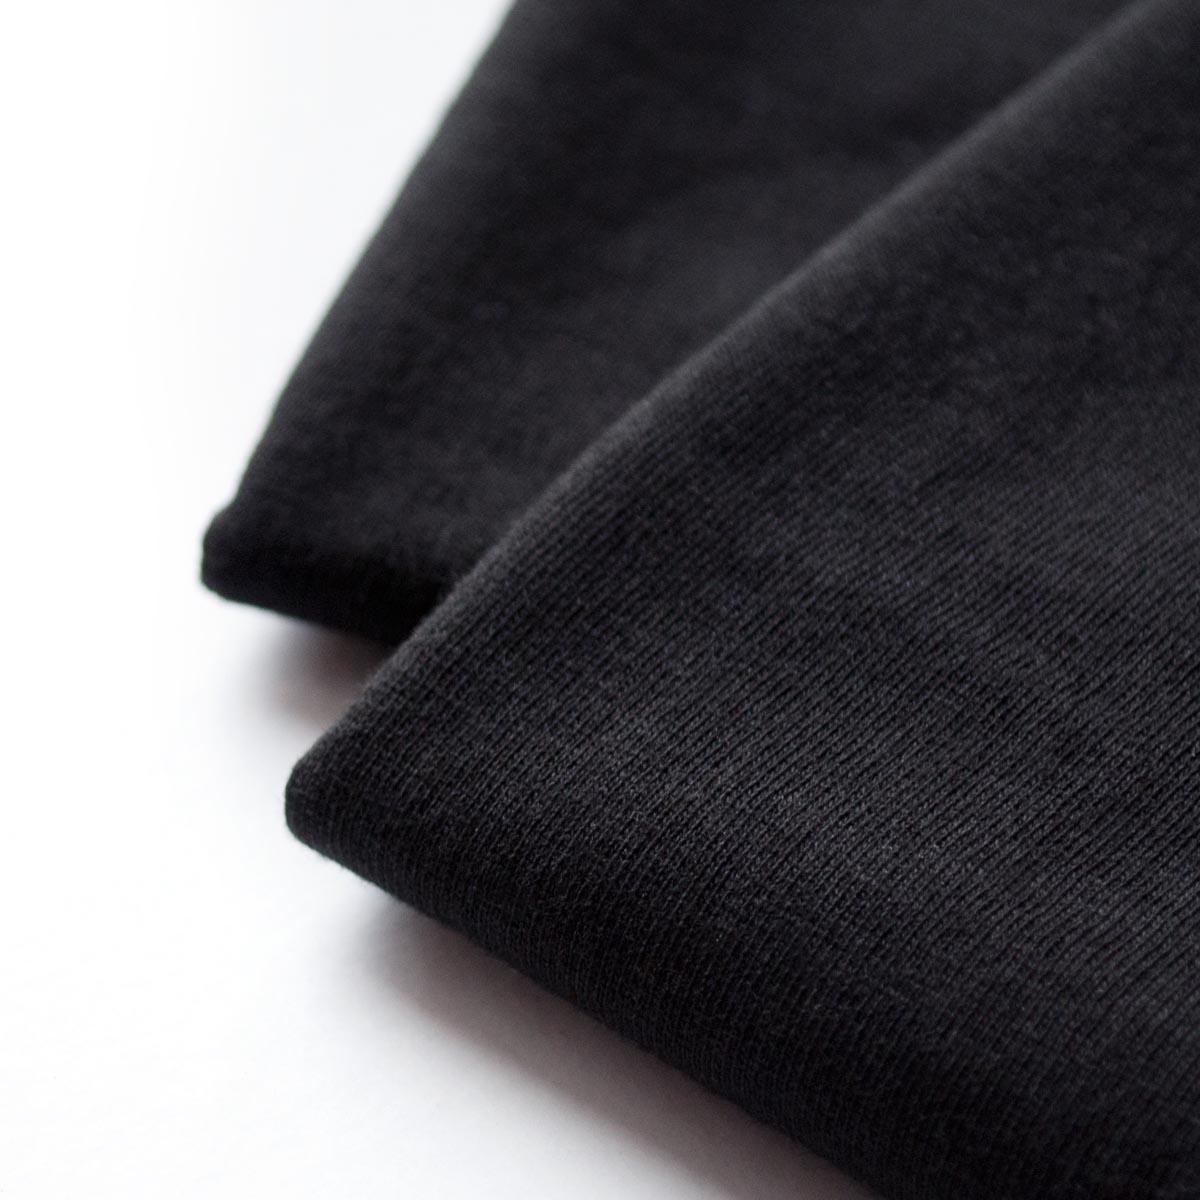 Detaliu textura material, tricouri negre